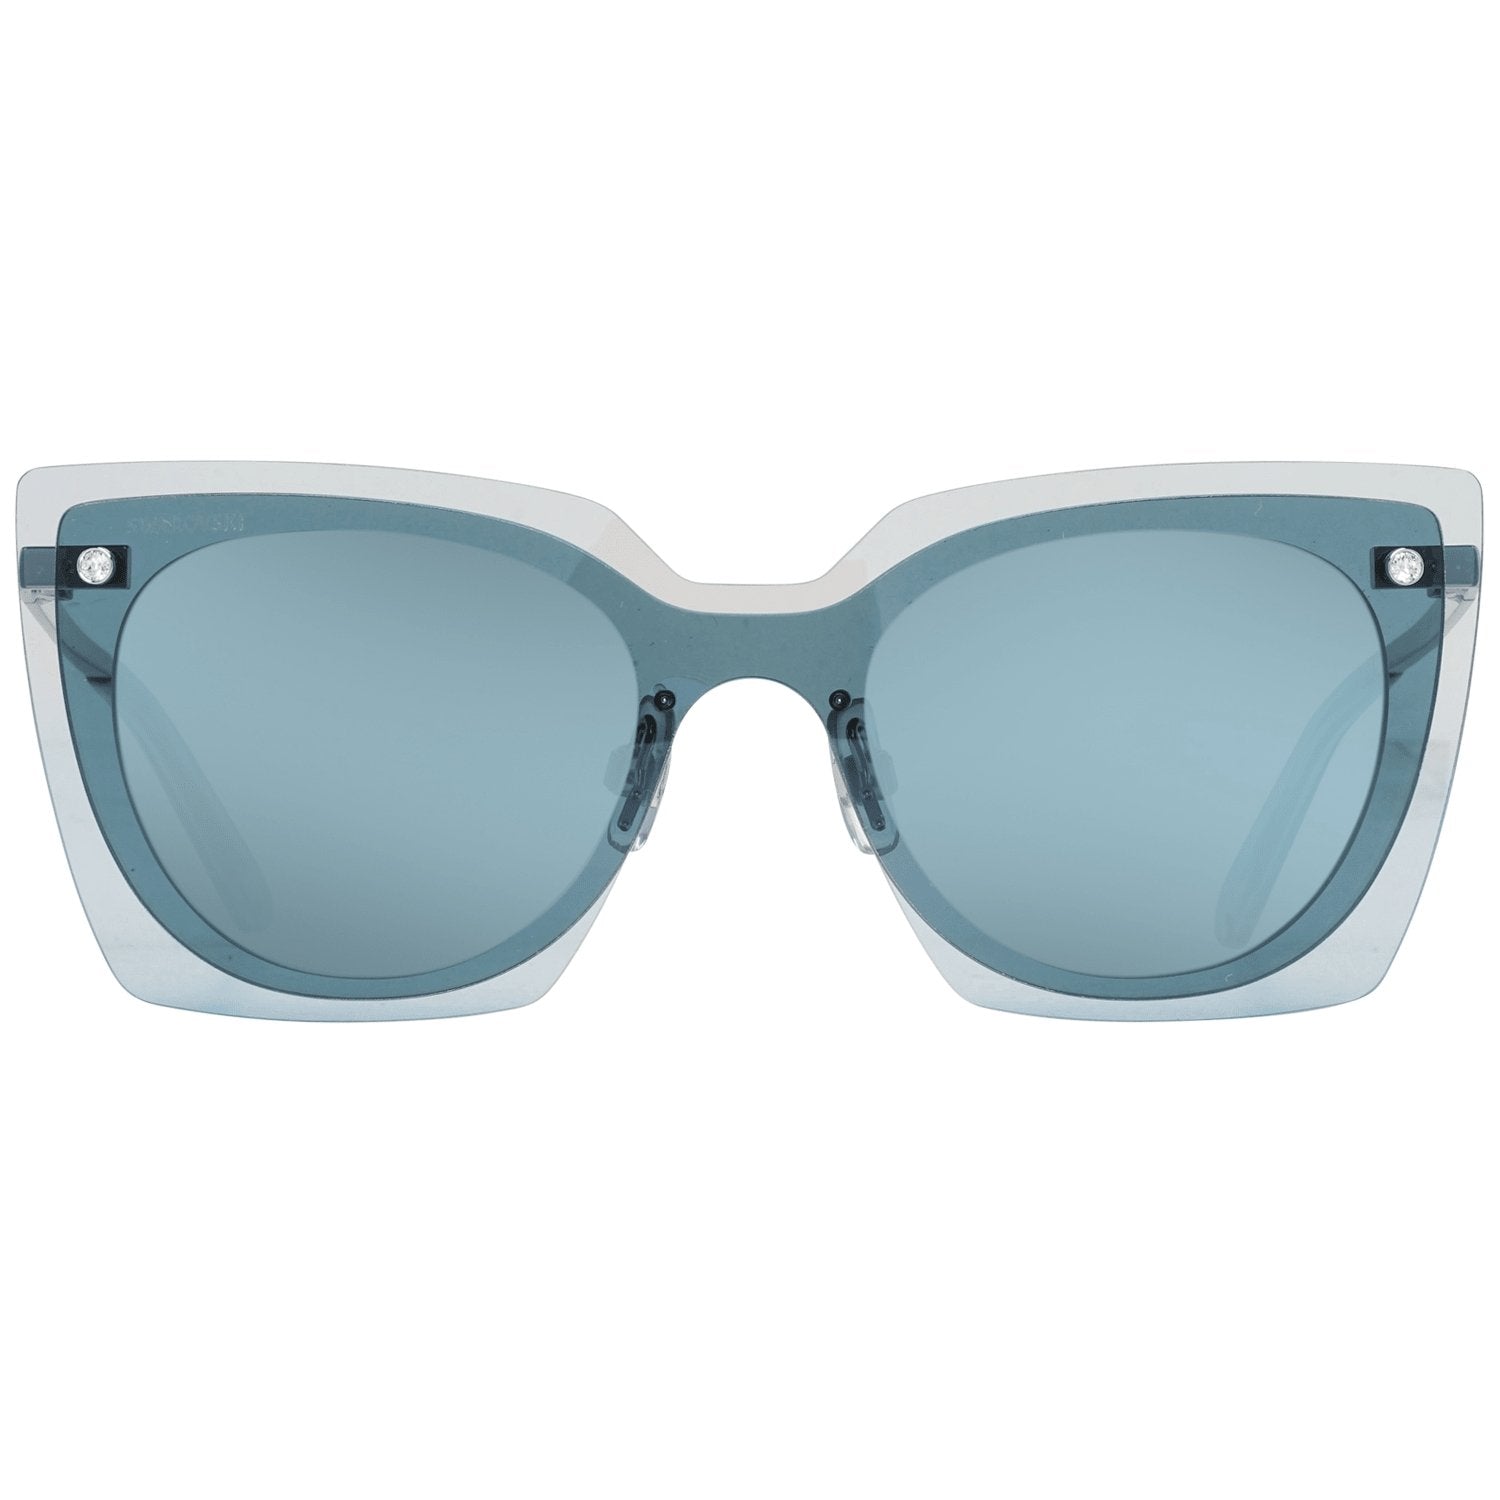 Swarovski Blue Sunglasses for Woman - Fizigo